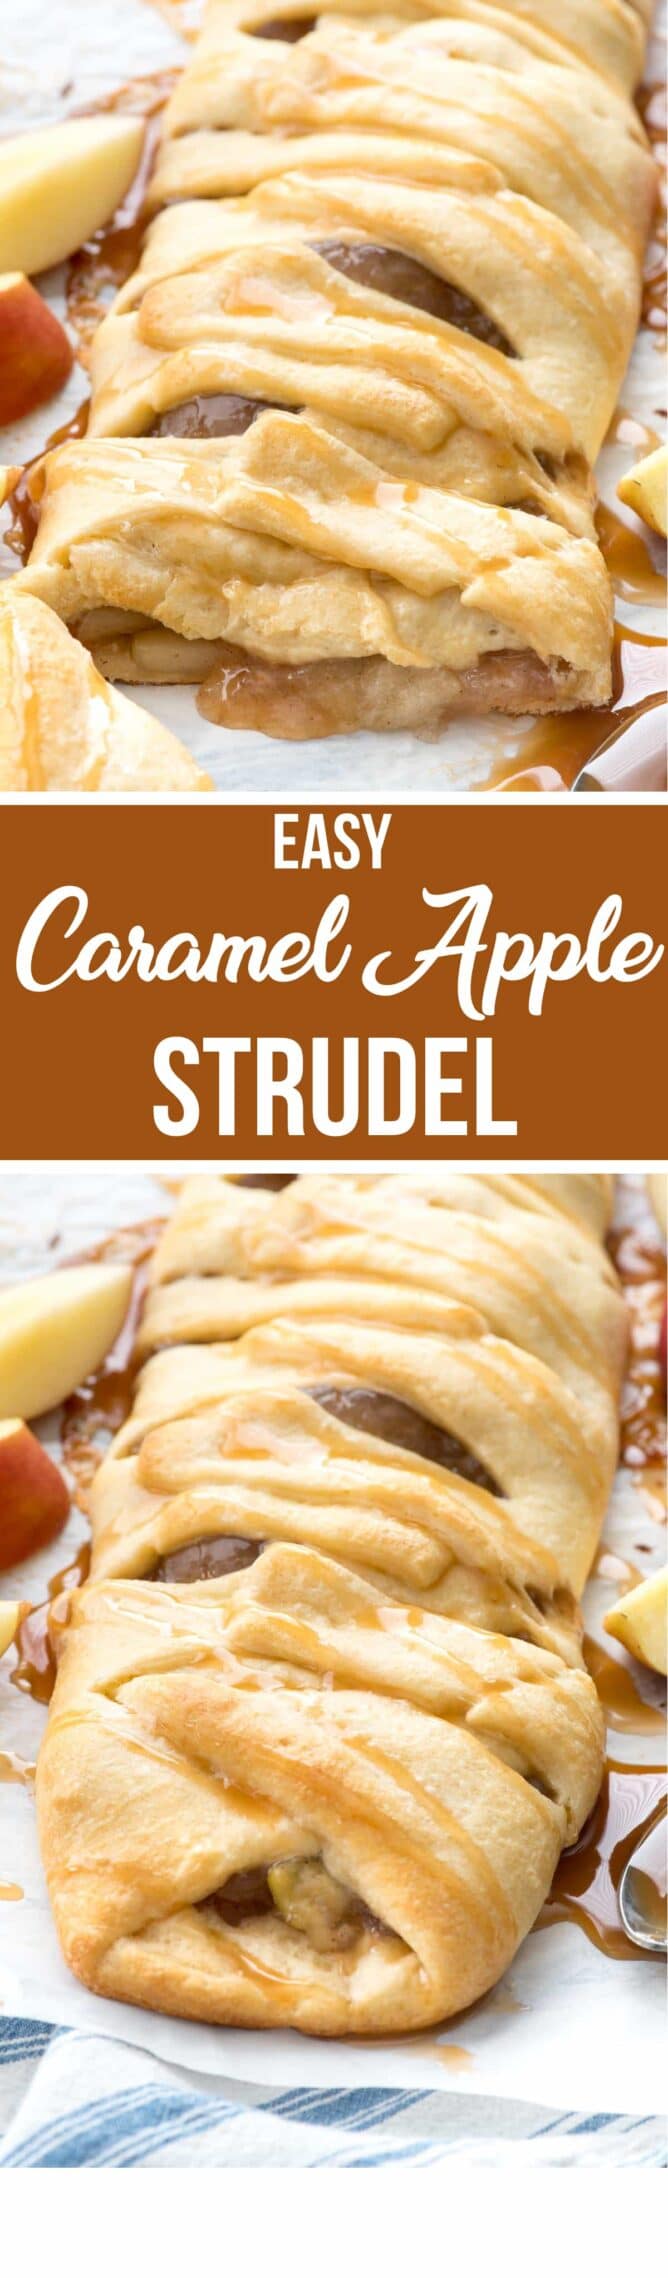 Collage of Caramel Apple Strudel